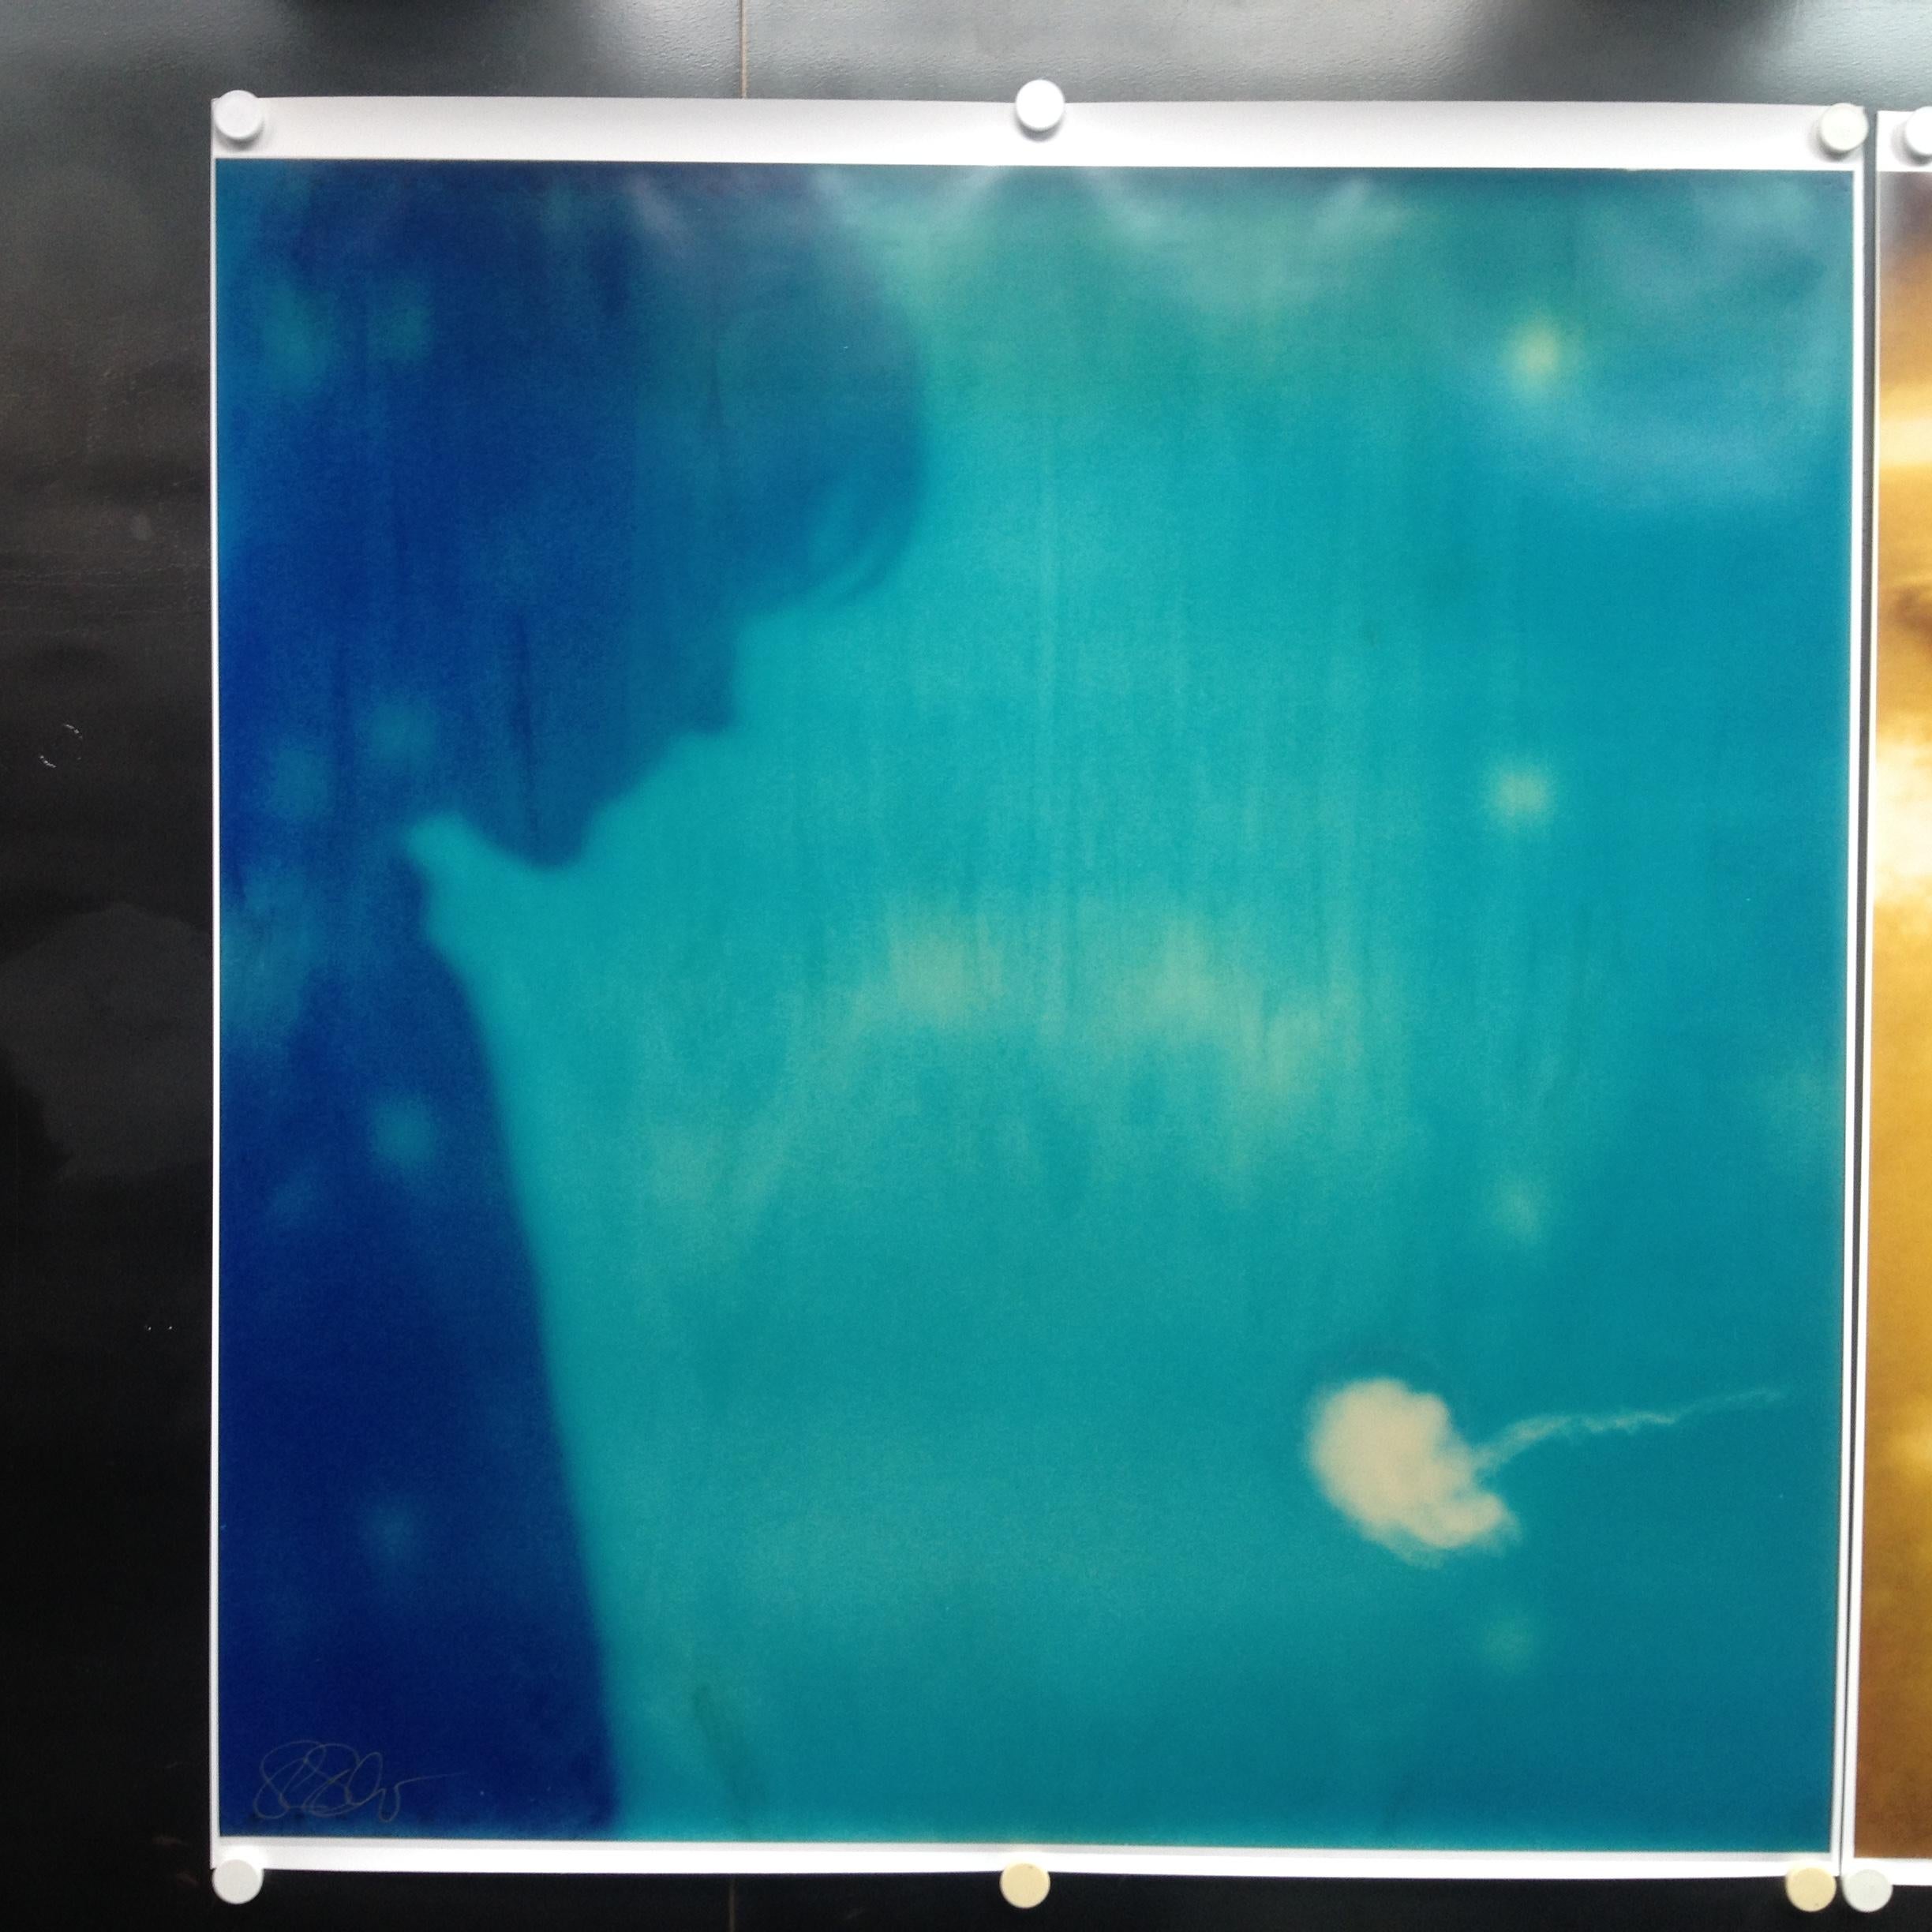 Jelly Fish – Zeitgenössisch, abgelaufen, Polaroid, Fotografie, Abstrakt, Ryan Gosling – Photograph von Stefanie Schneider